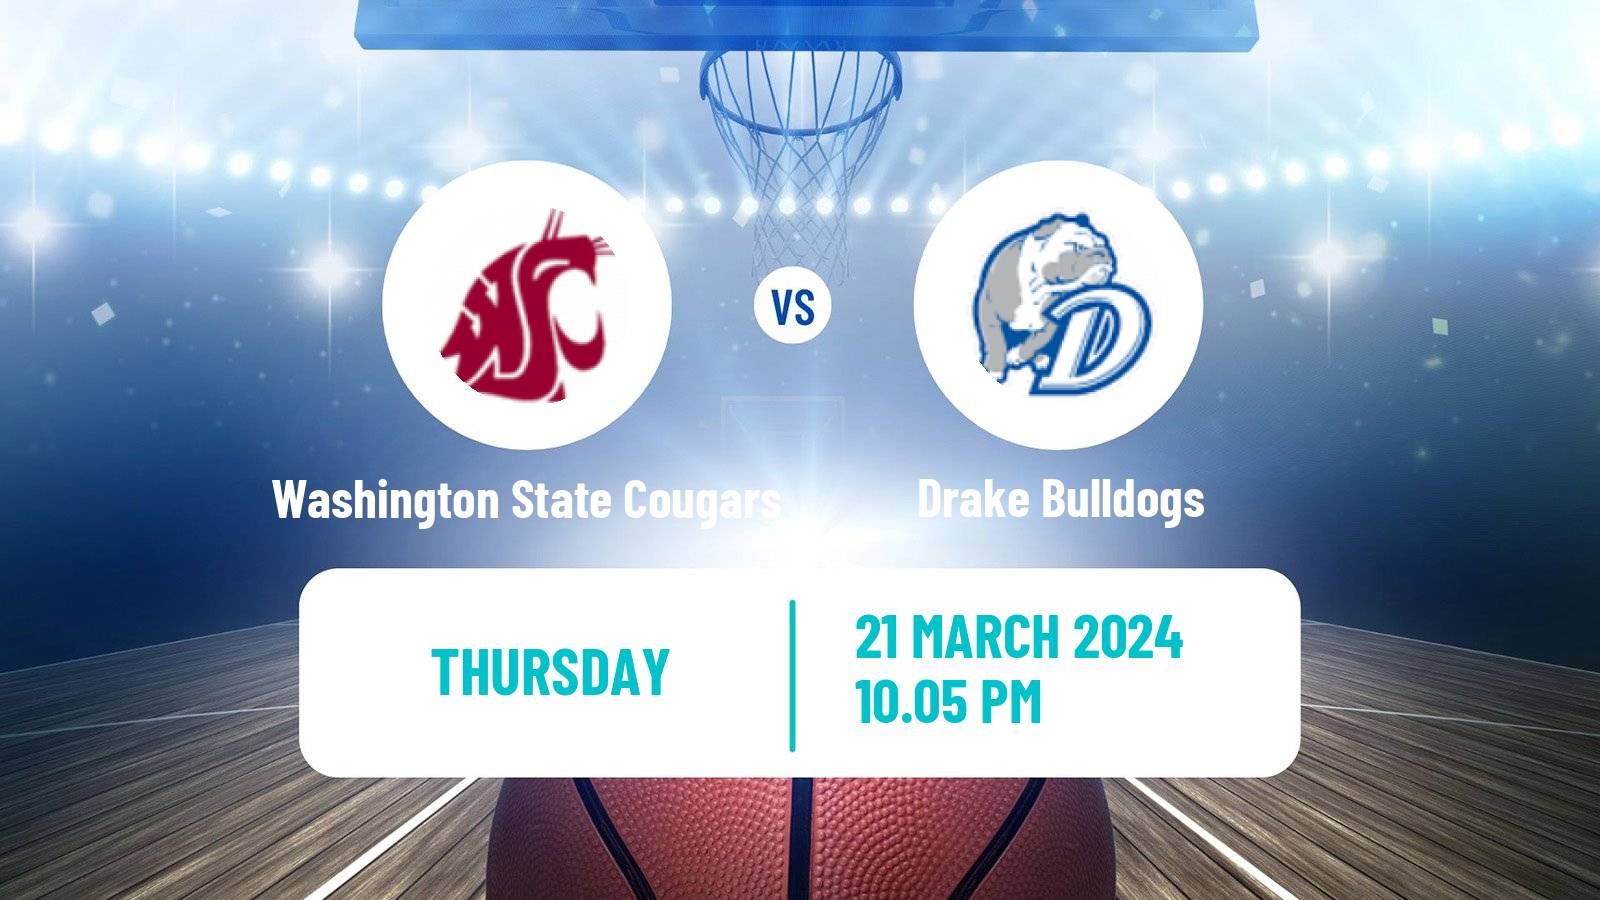 Basketball NCAA College Basketball Washington State Cougars - Drake Bulldogs